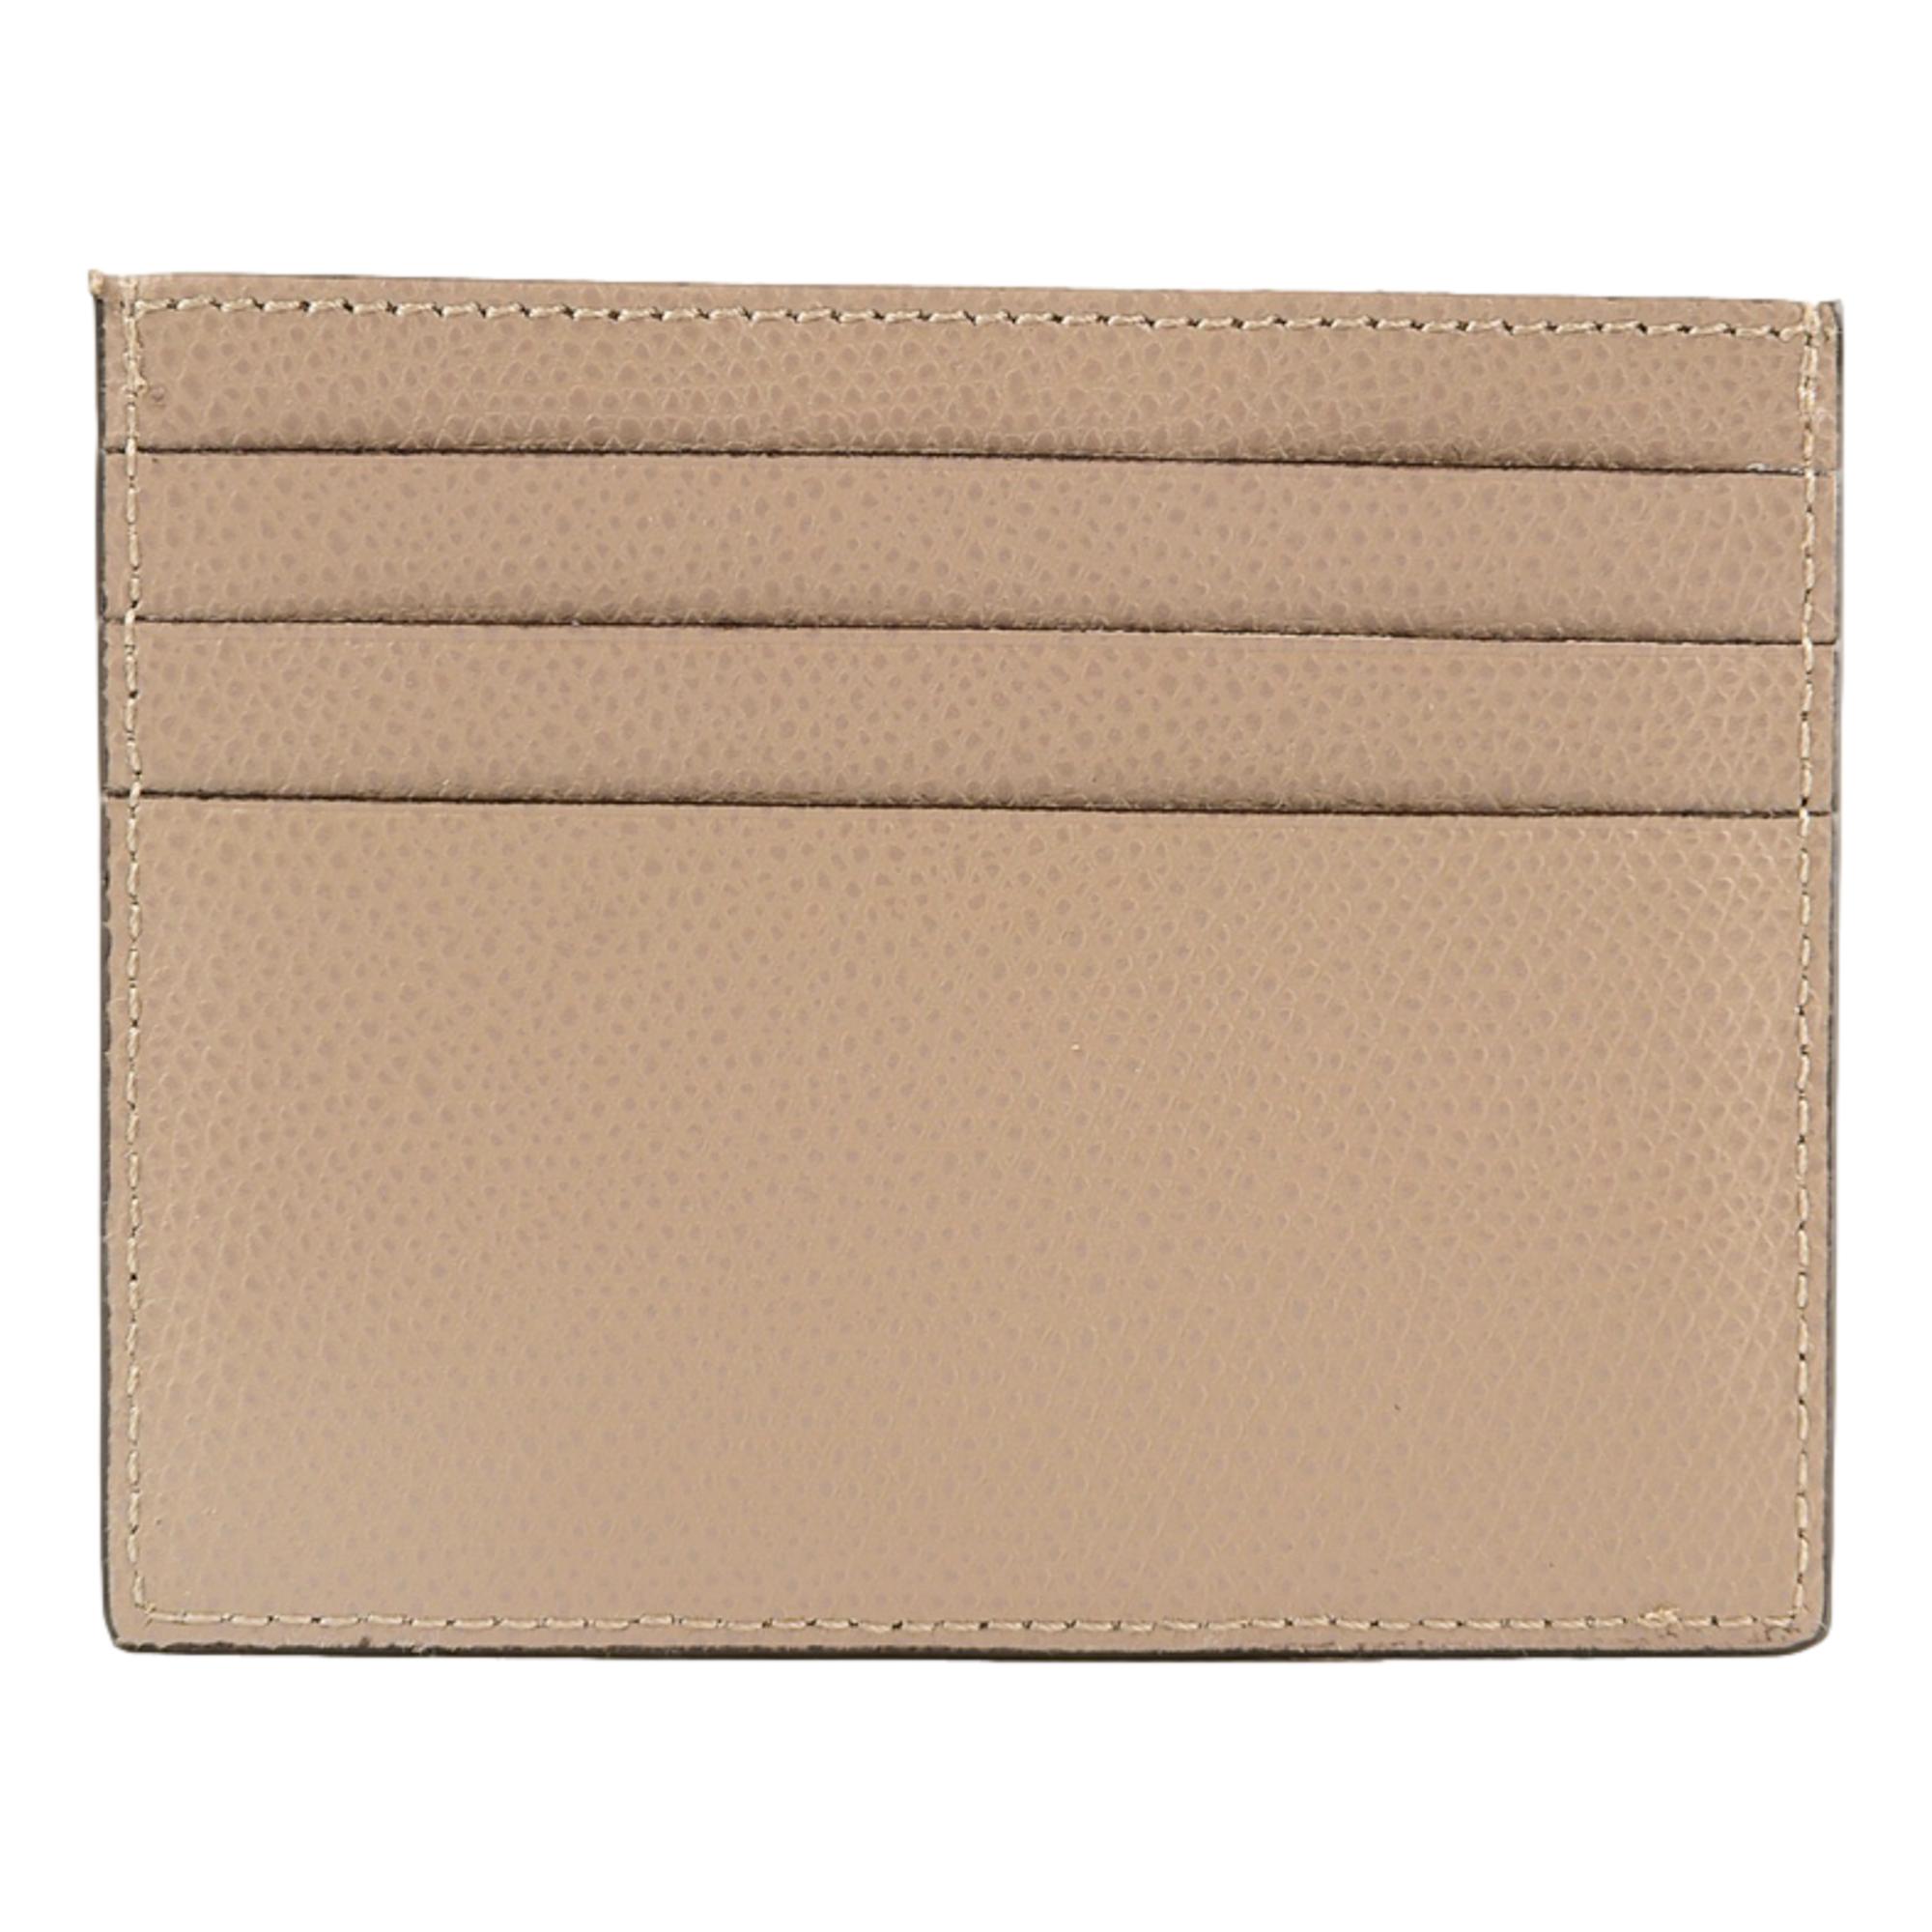 Fendi F Logo Beige Leather Card Case Wallet